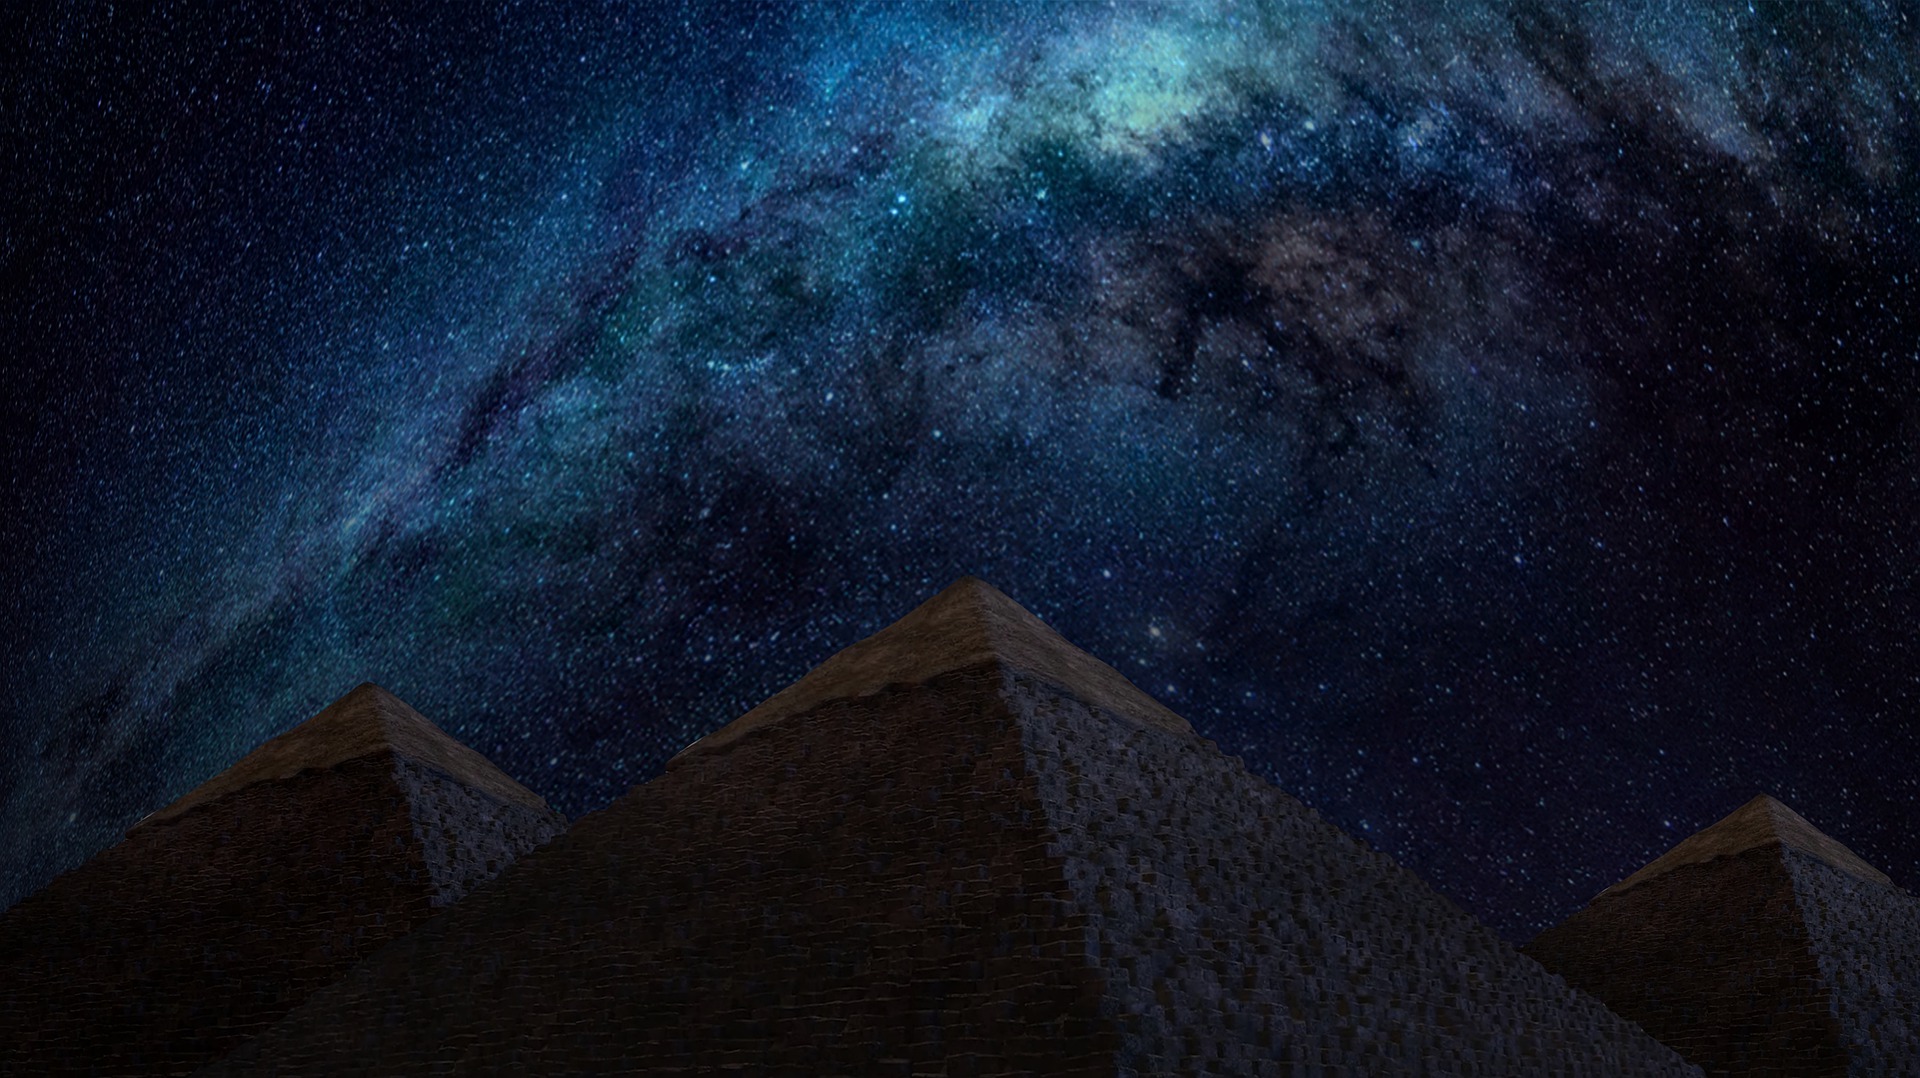 Млечный Путь над пирамидами